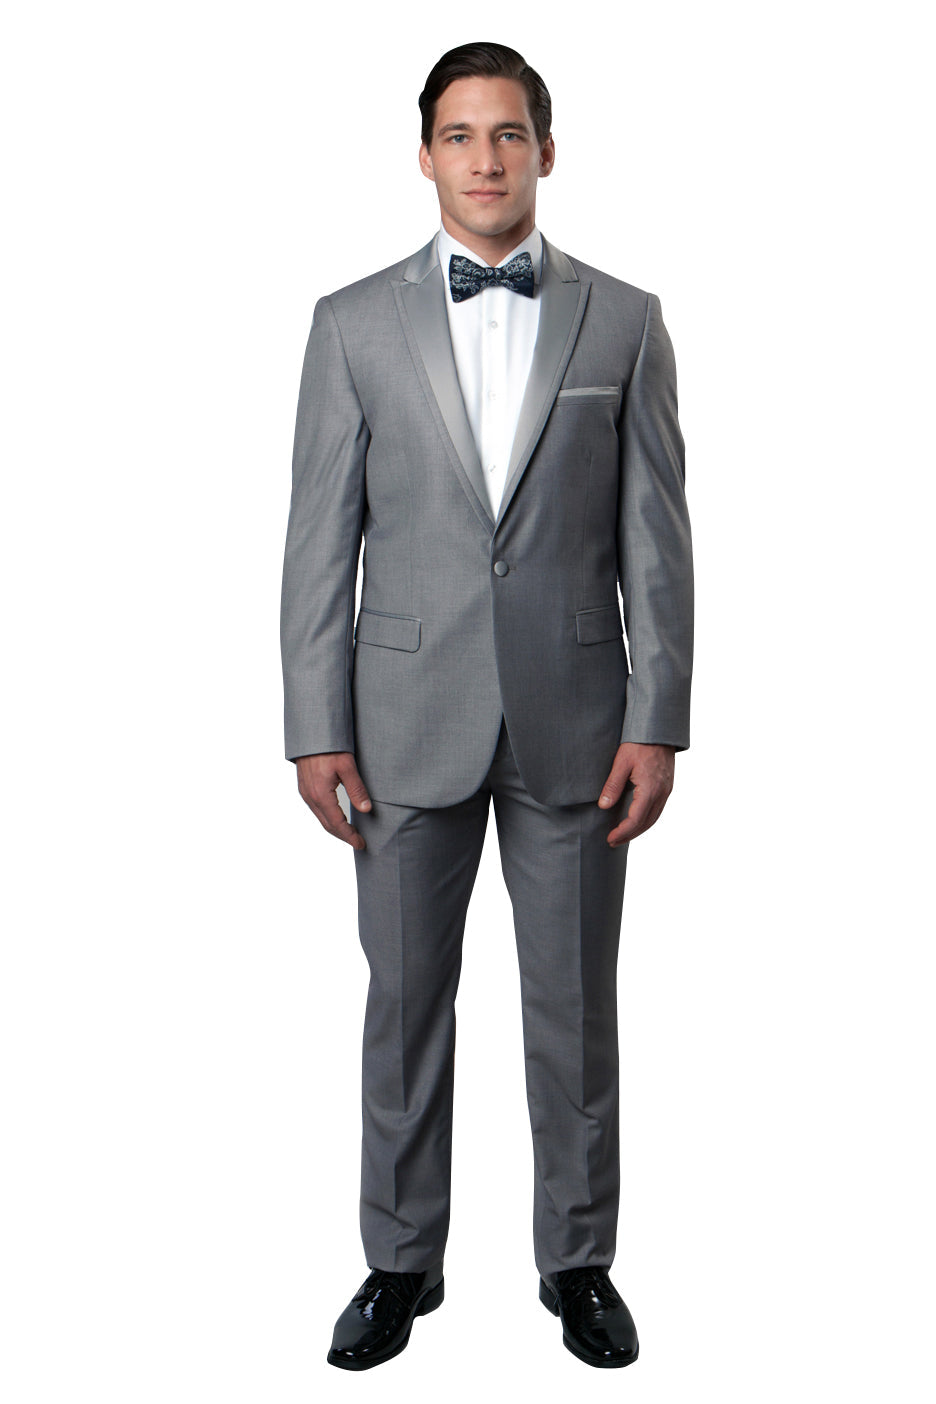 Satin Peak Lapel With Trim Tuxedo Solid Slim Fit Prom Tuxedos For Men